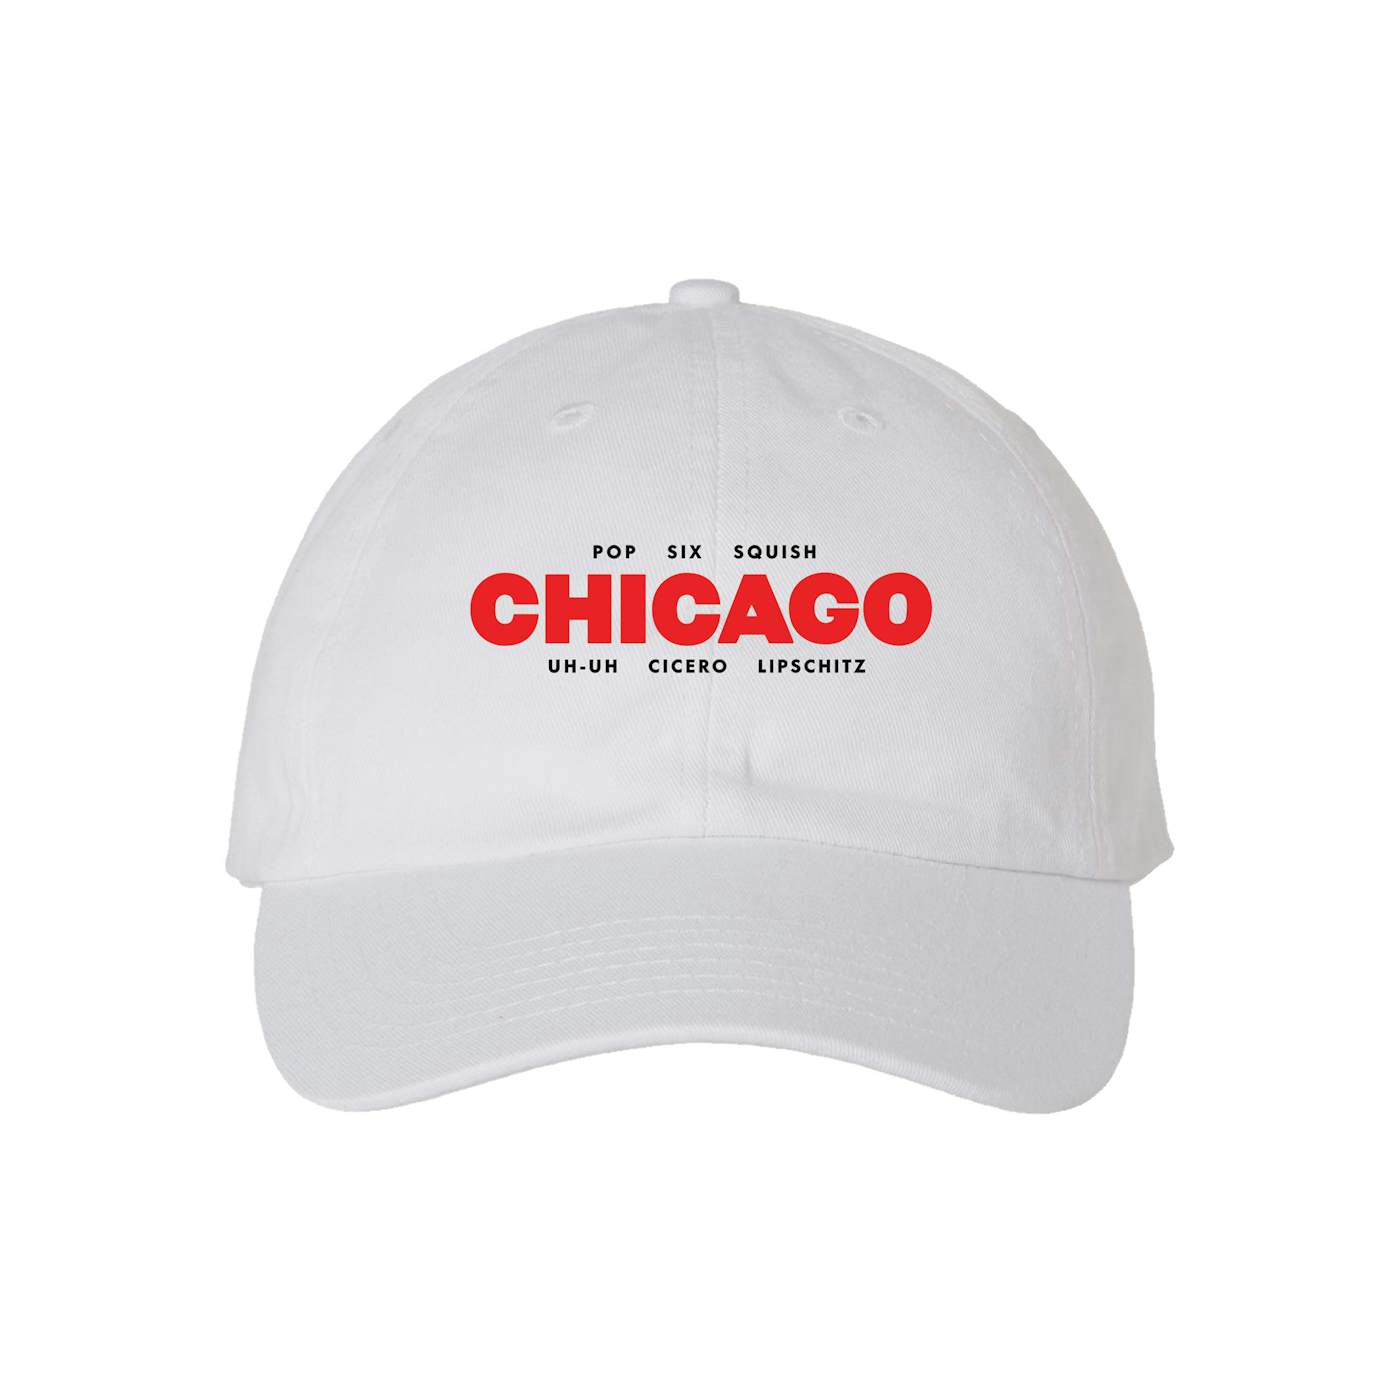 Chicago The Musical CHICAGO Lyrics Cap